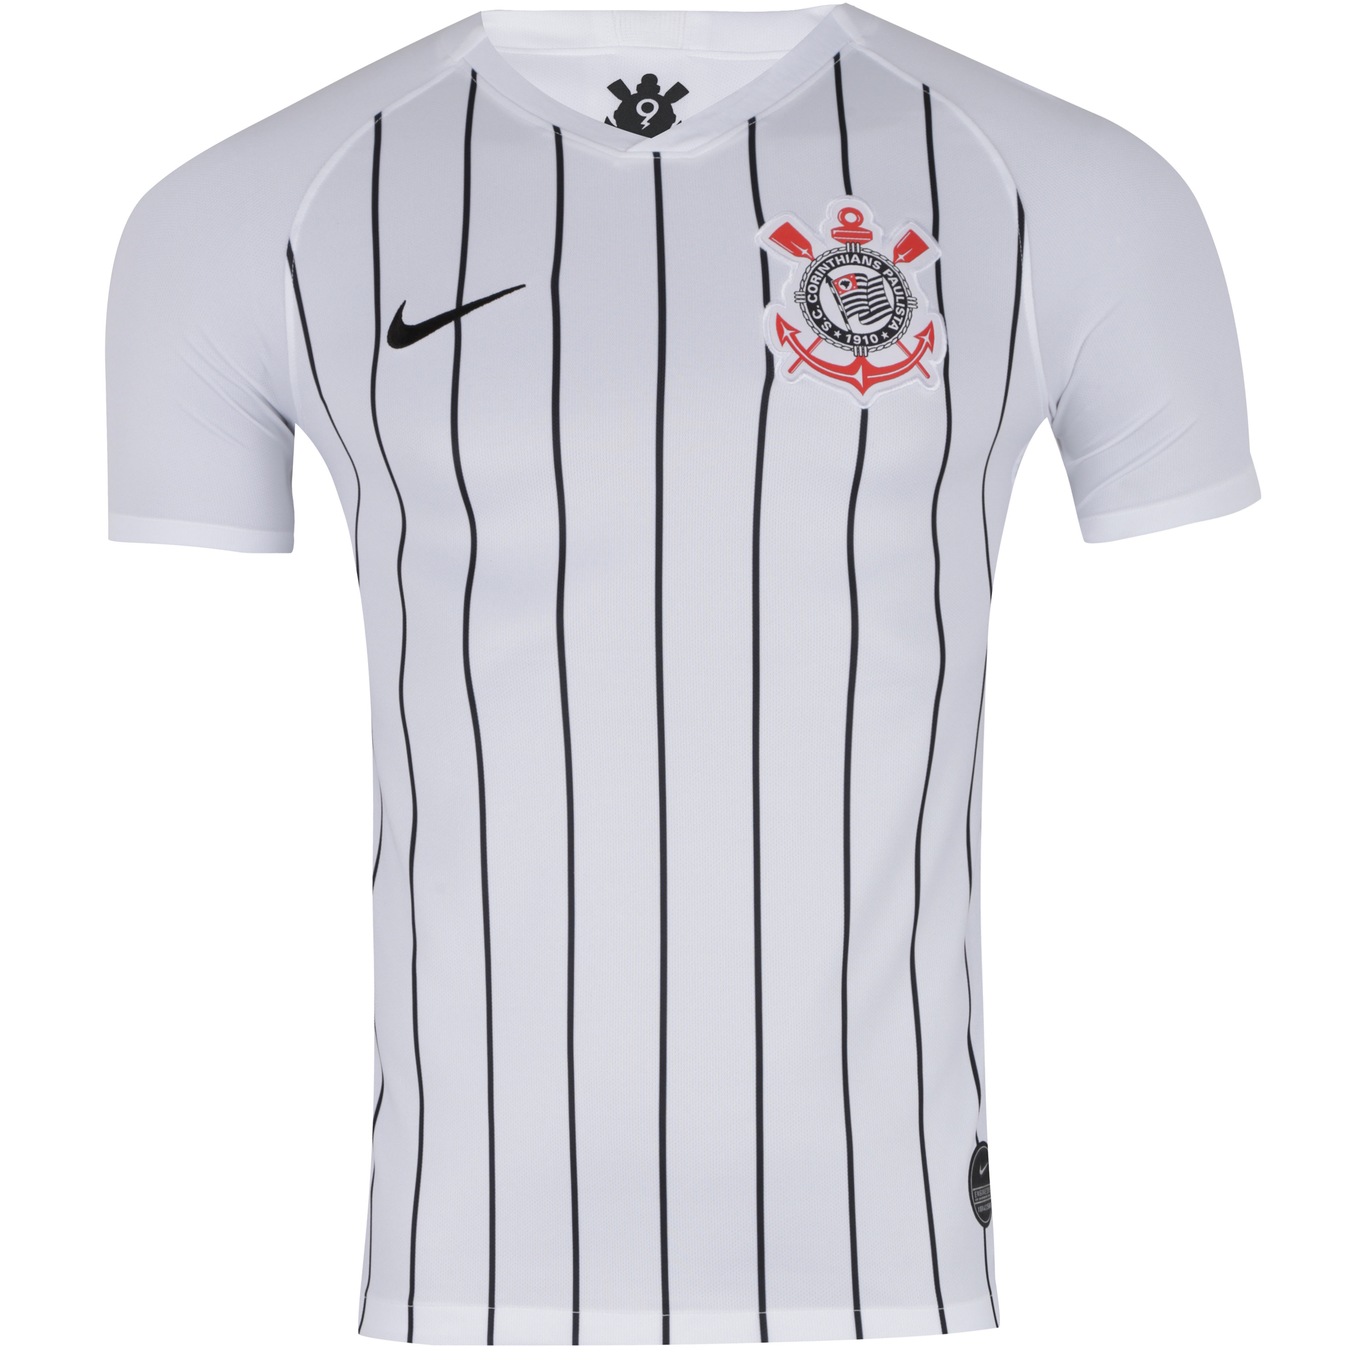 Camisa do Corinthians I 2019 Nike - Masculina